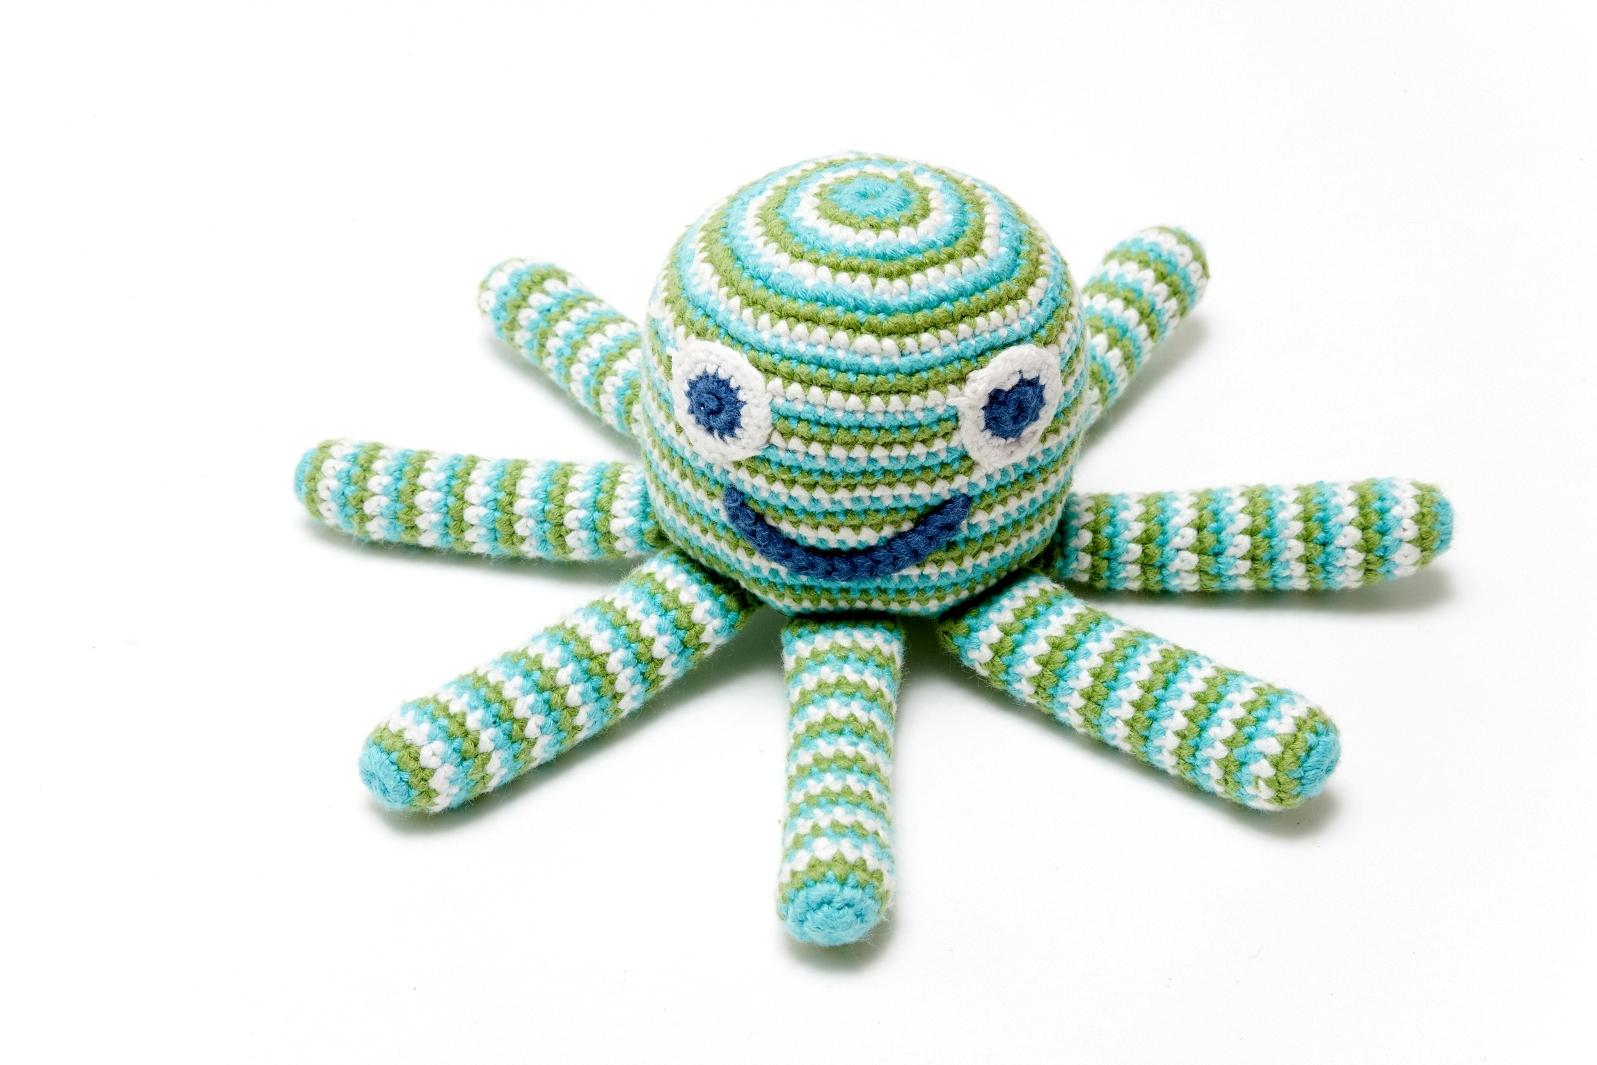 Octopus rattle